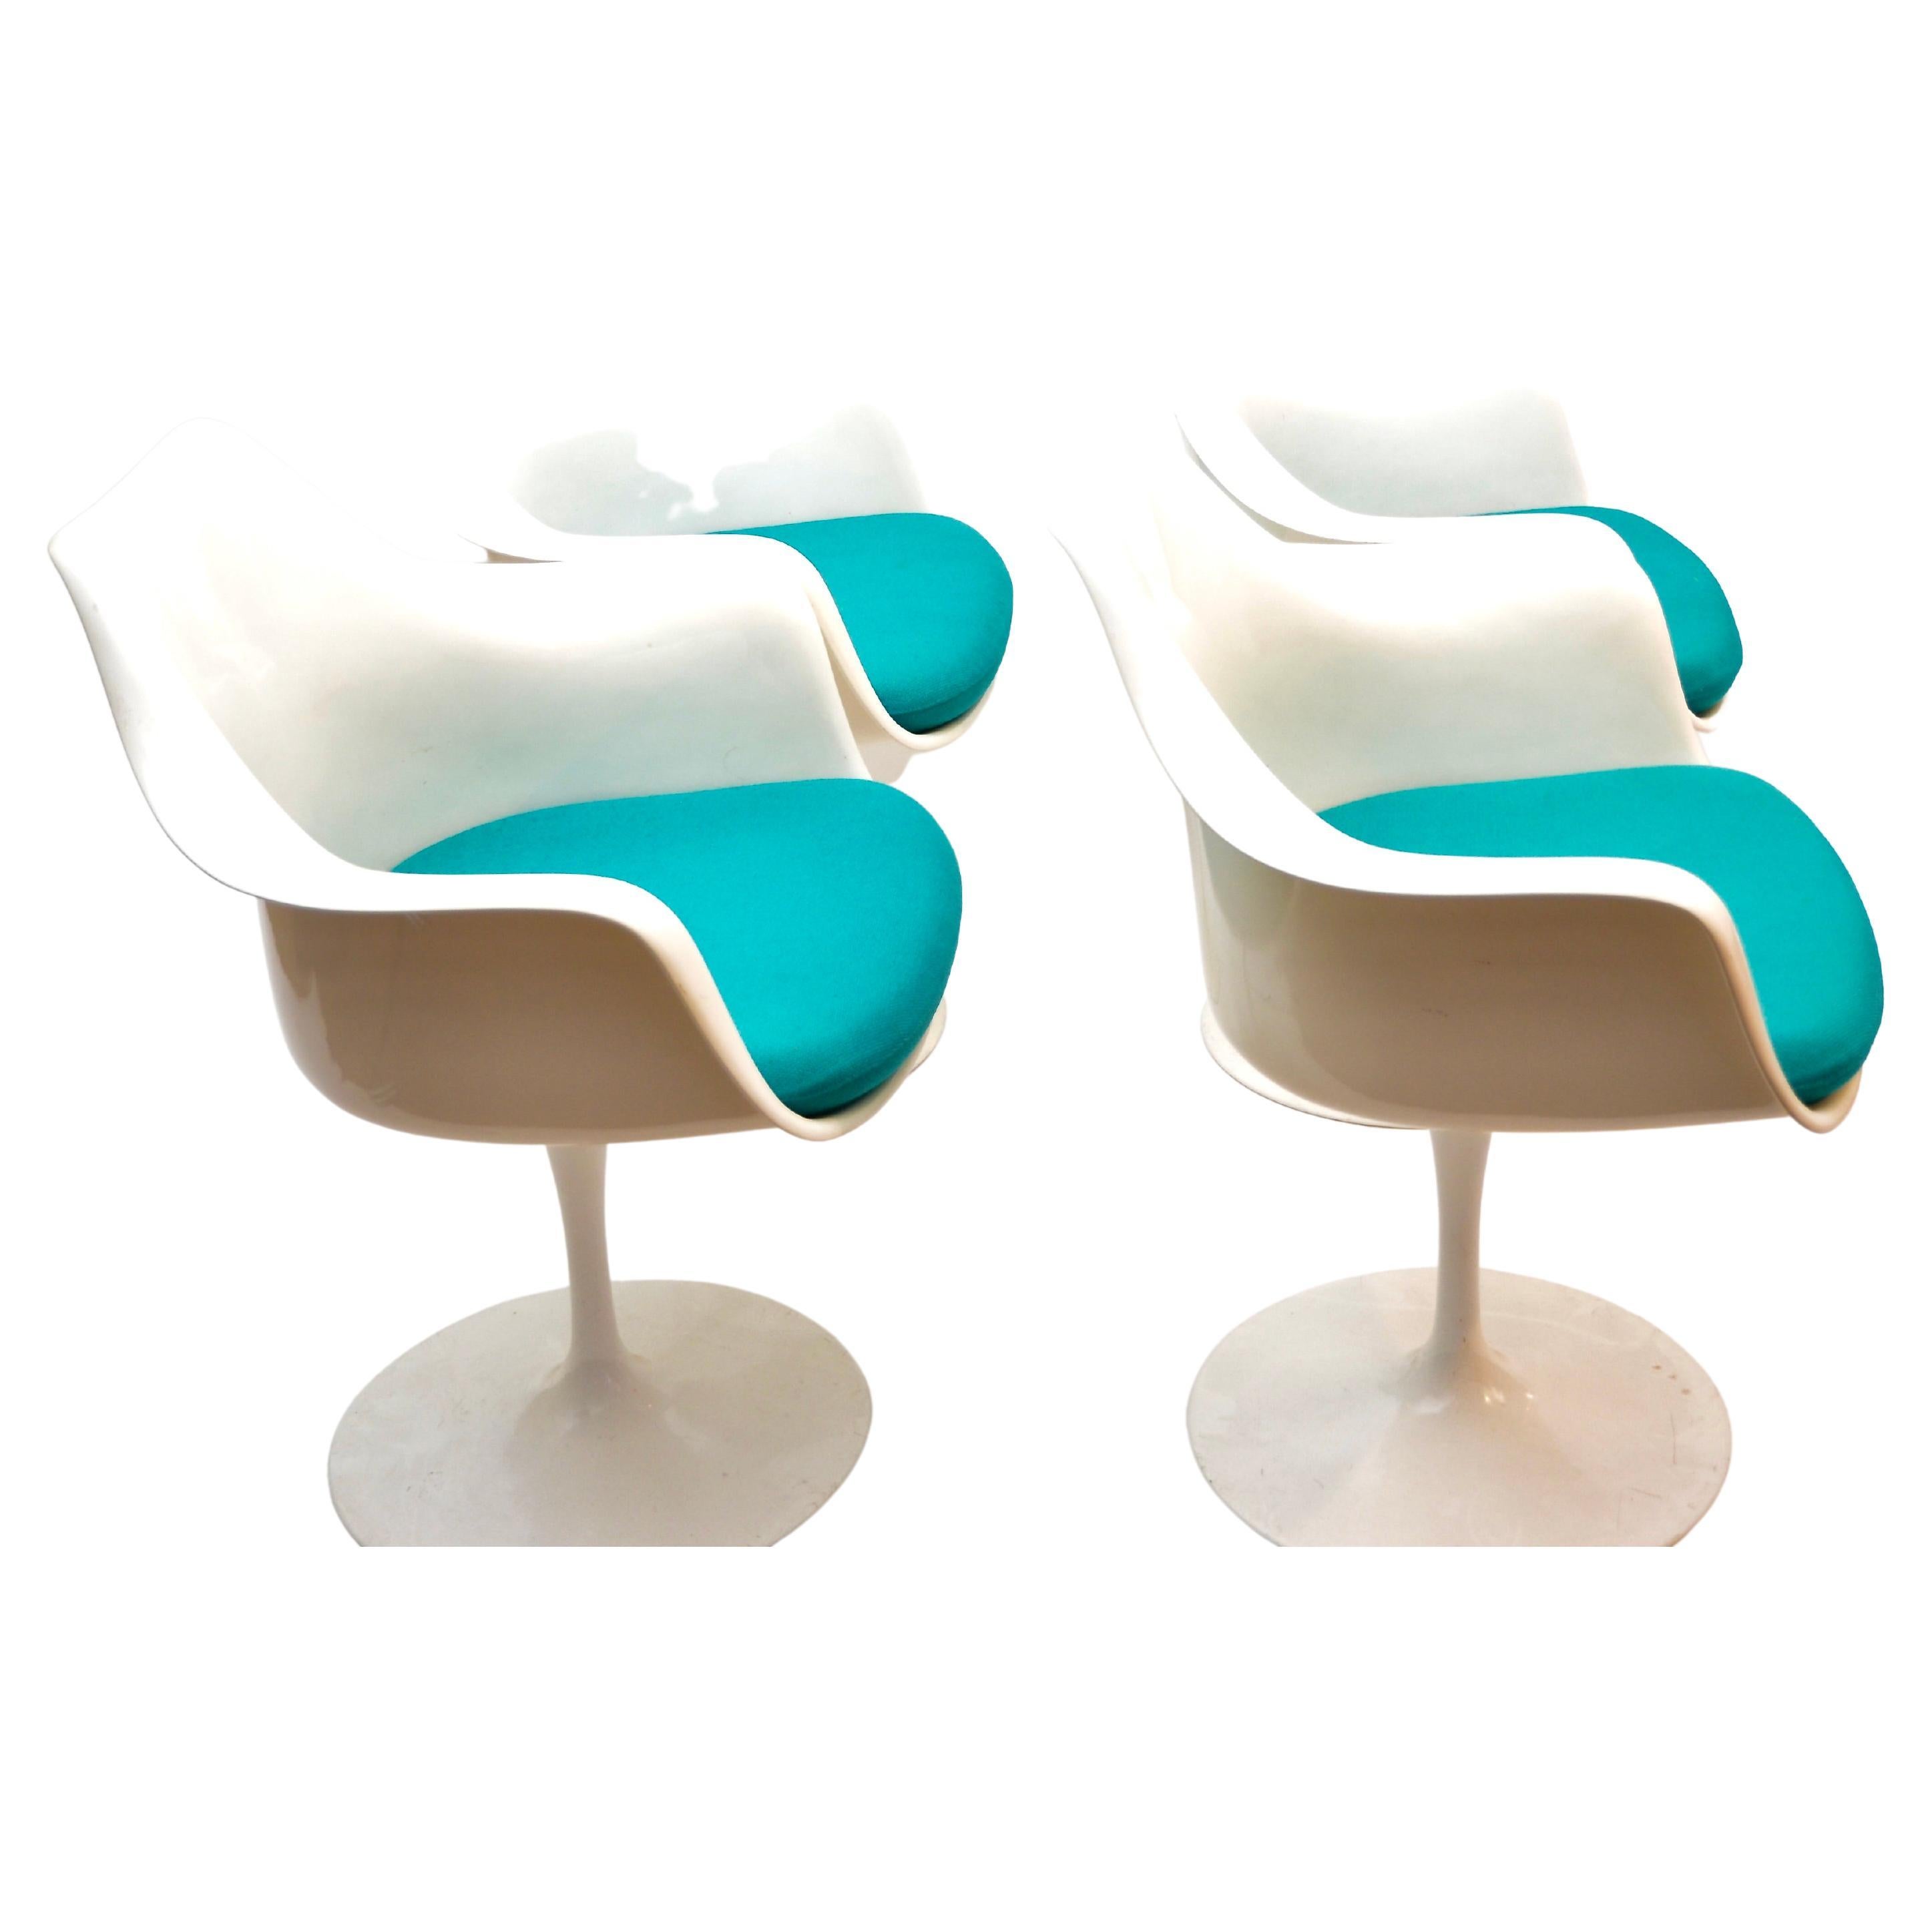 Tulip-Sessel von Eero Saarinen für Knoll International. Geformte Glasfaserschale und Sockel aus Aluminiumguss. 
Seine organische Form bleibt zeitlos und elegant. 
Satz von 4 Sesseln.

Eero Saarinen war ein finnisch-amerikanischer